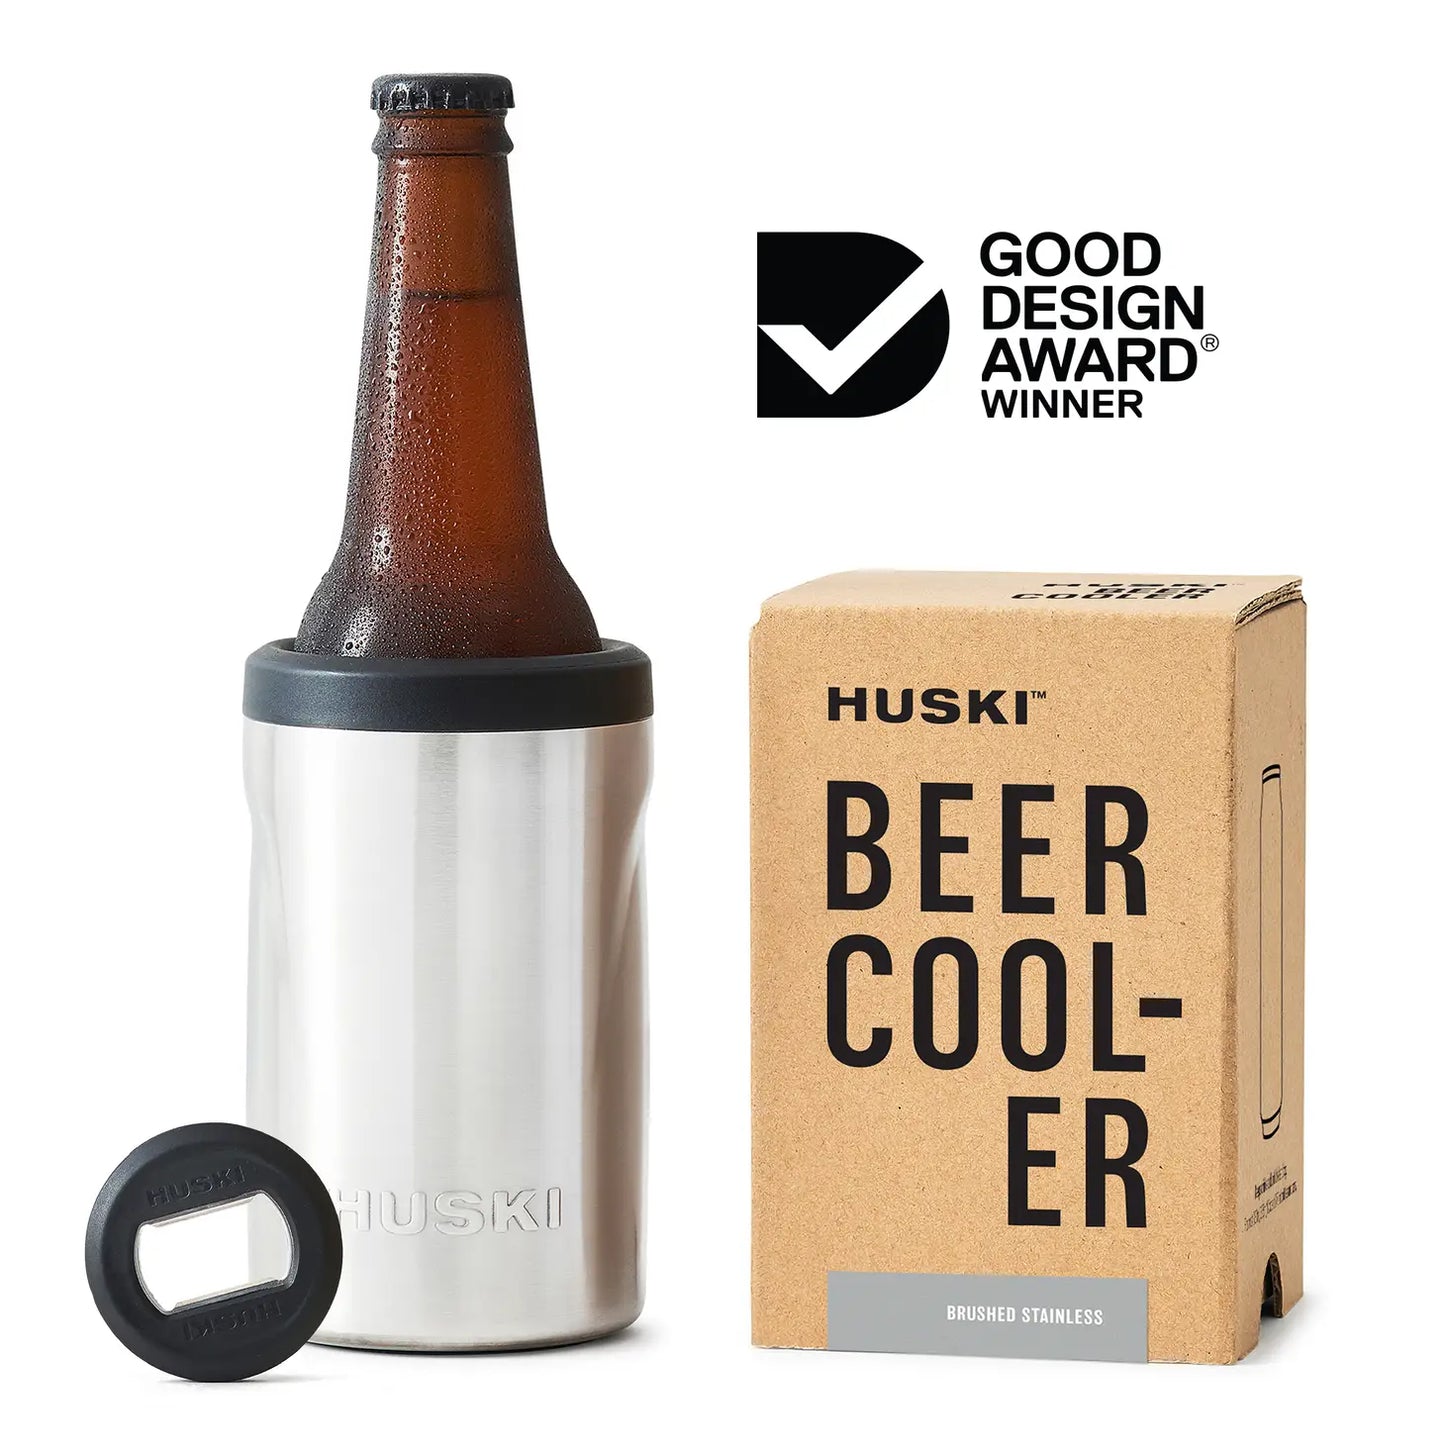 Huski Wine & Beer Coolers